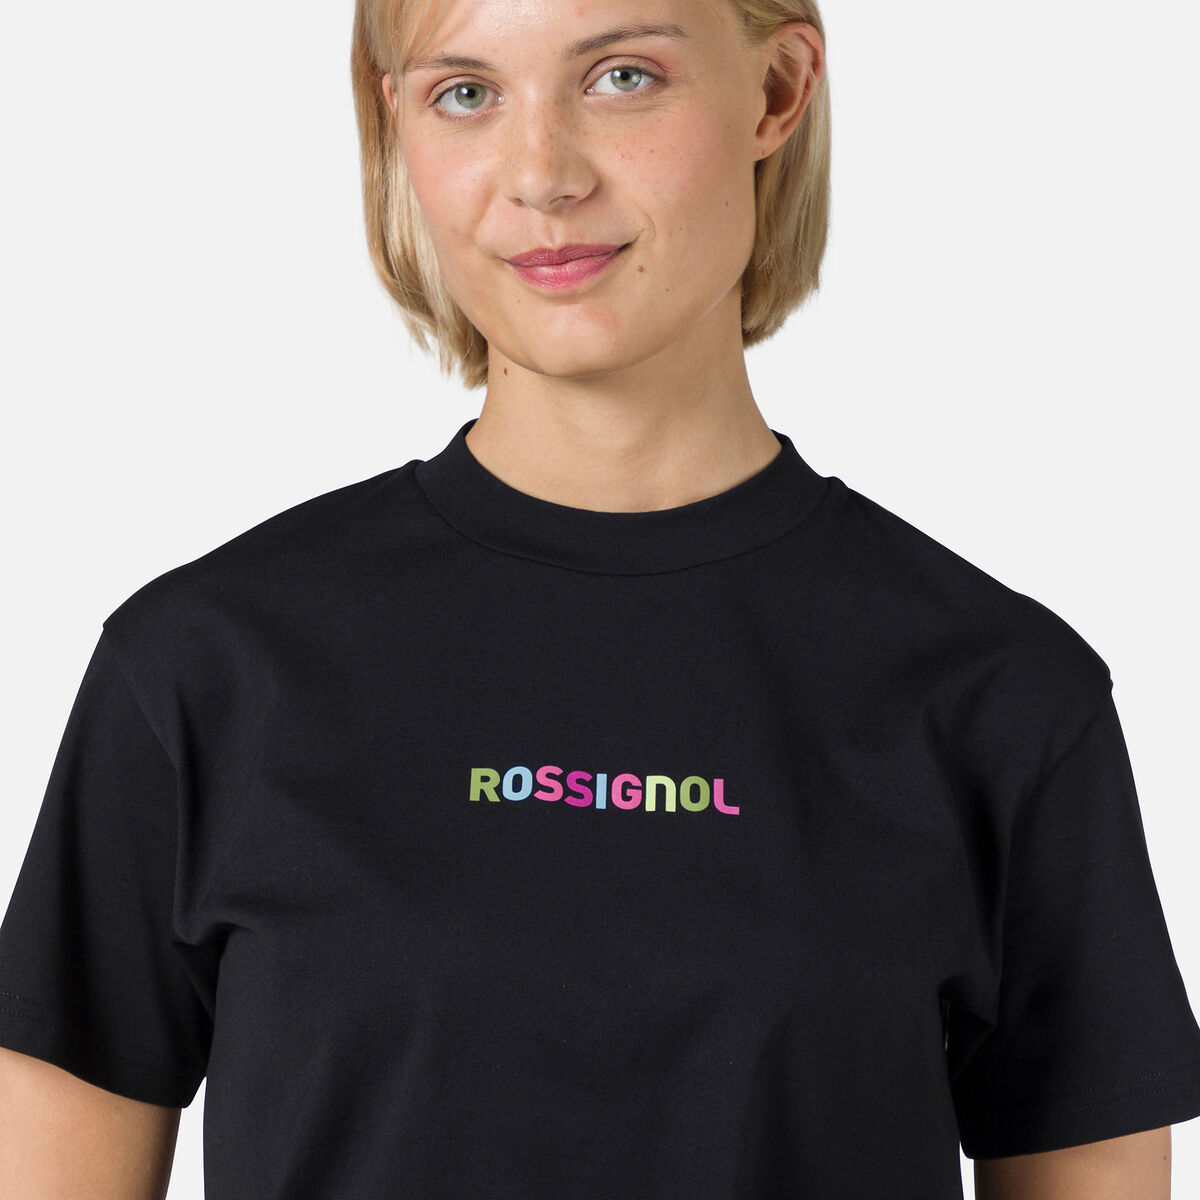 Rossignol Damen-T-Shirt mit Print black